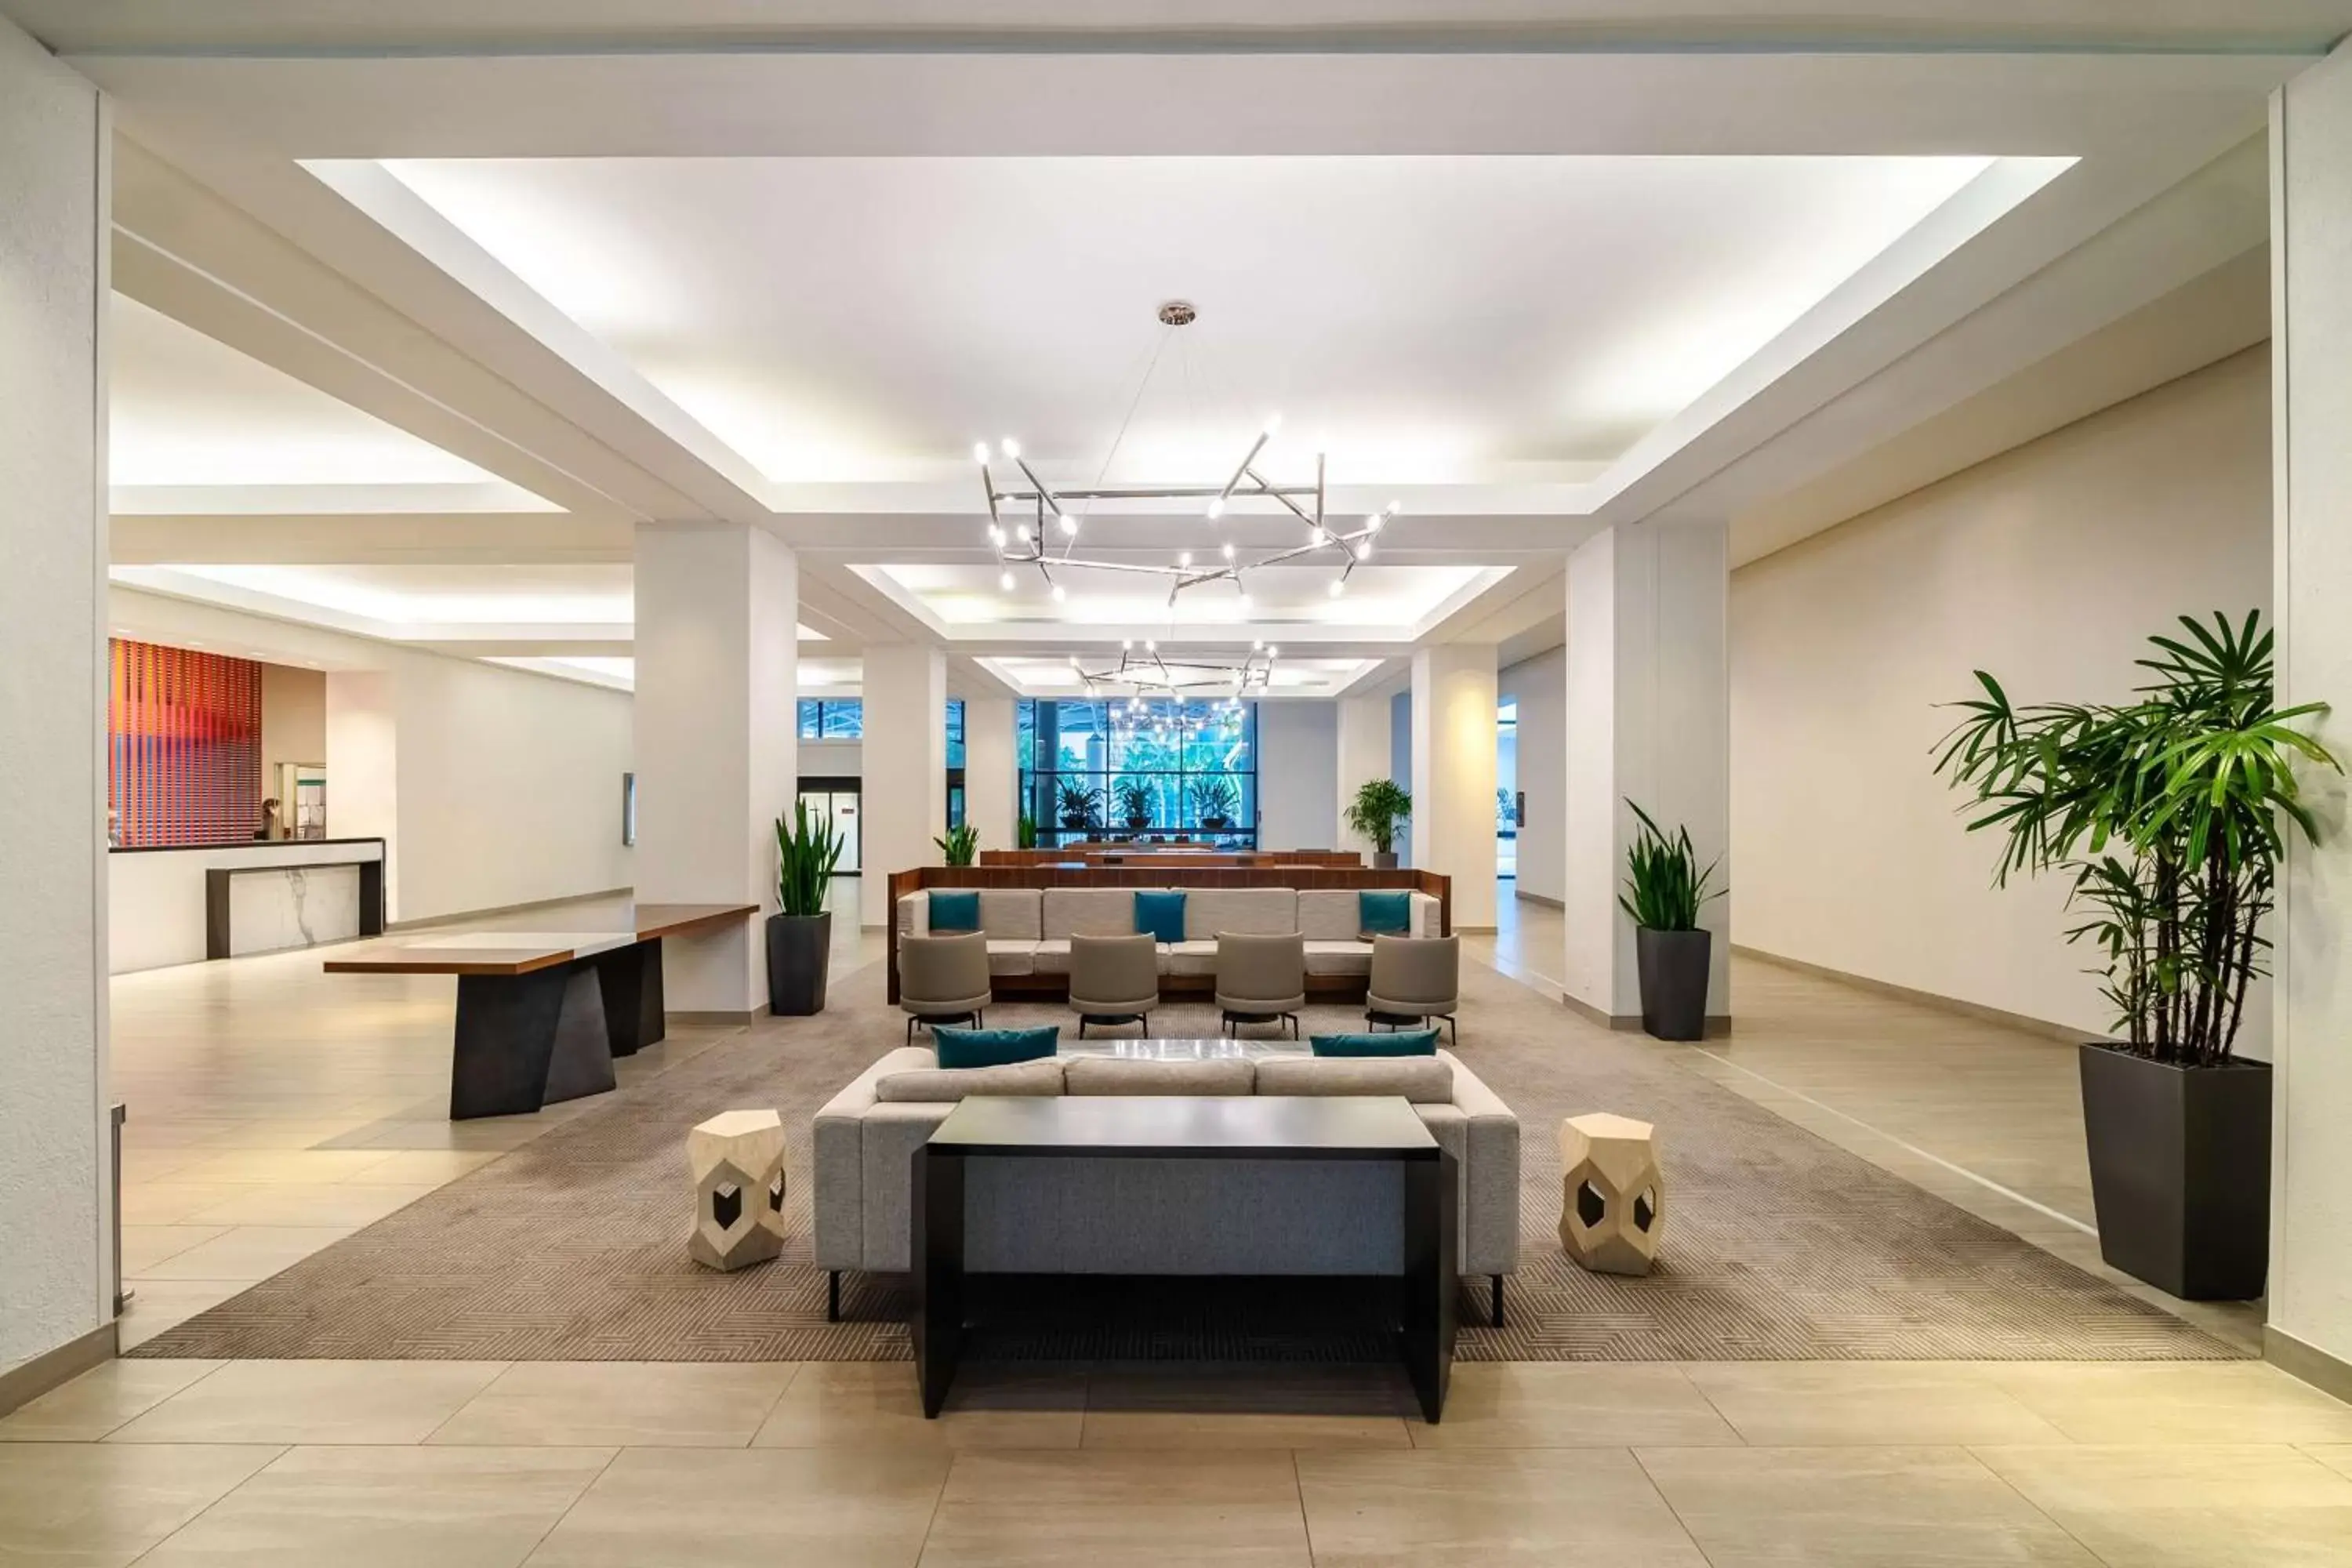 Lobby or reception in Hyatt Regency Miami